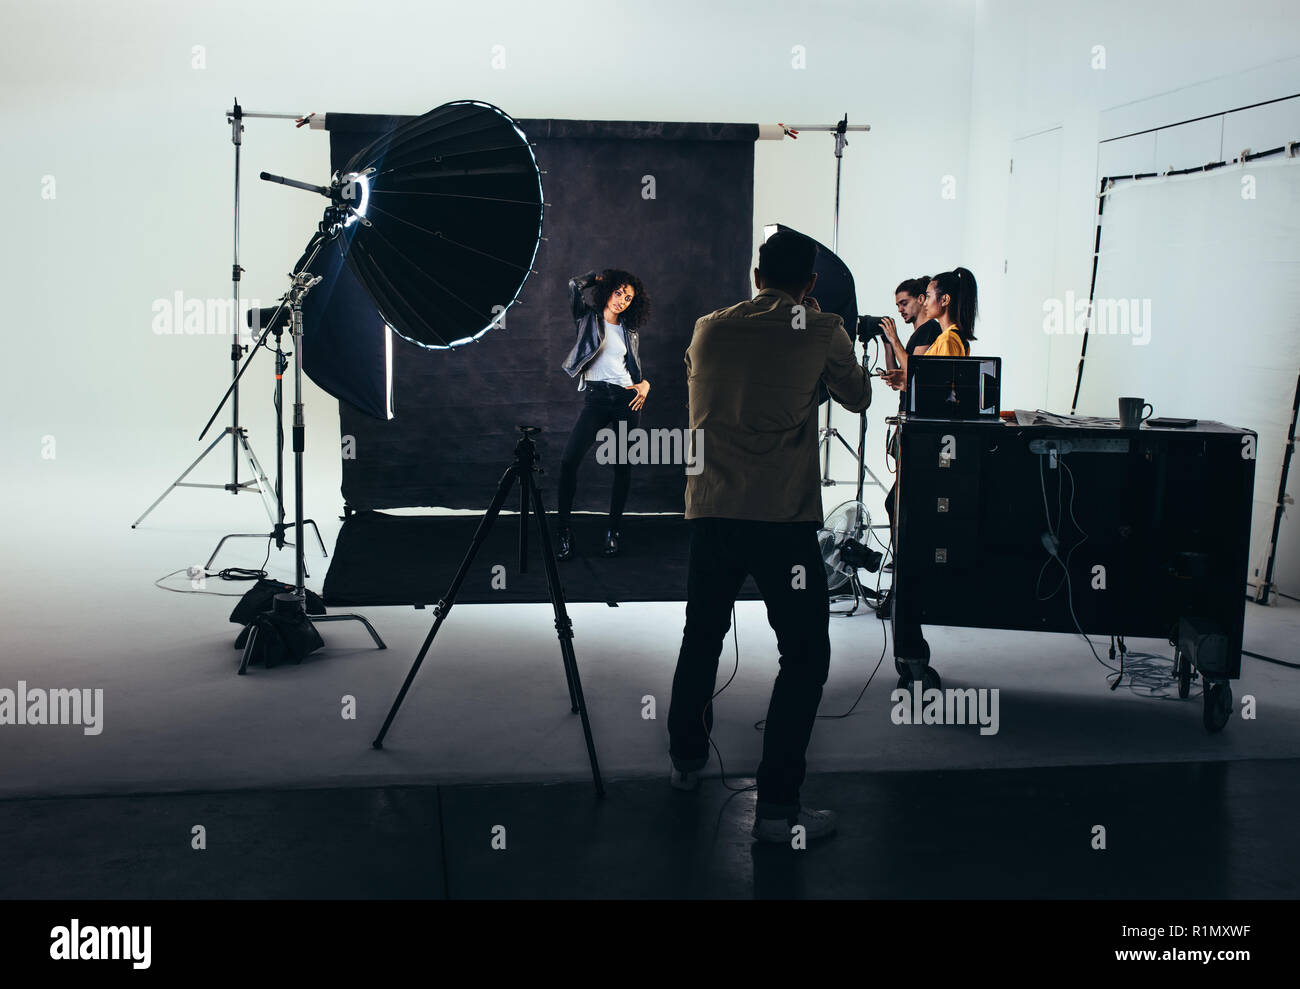 Fotógrafo fotografías de un modelo femenino con luces de flash de estudio. Fotógrafo con su equipo durante una sesión de fotos. Foto de stock